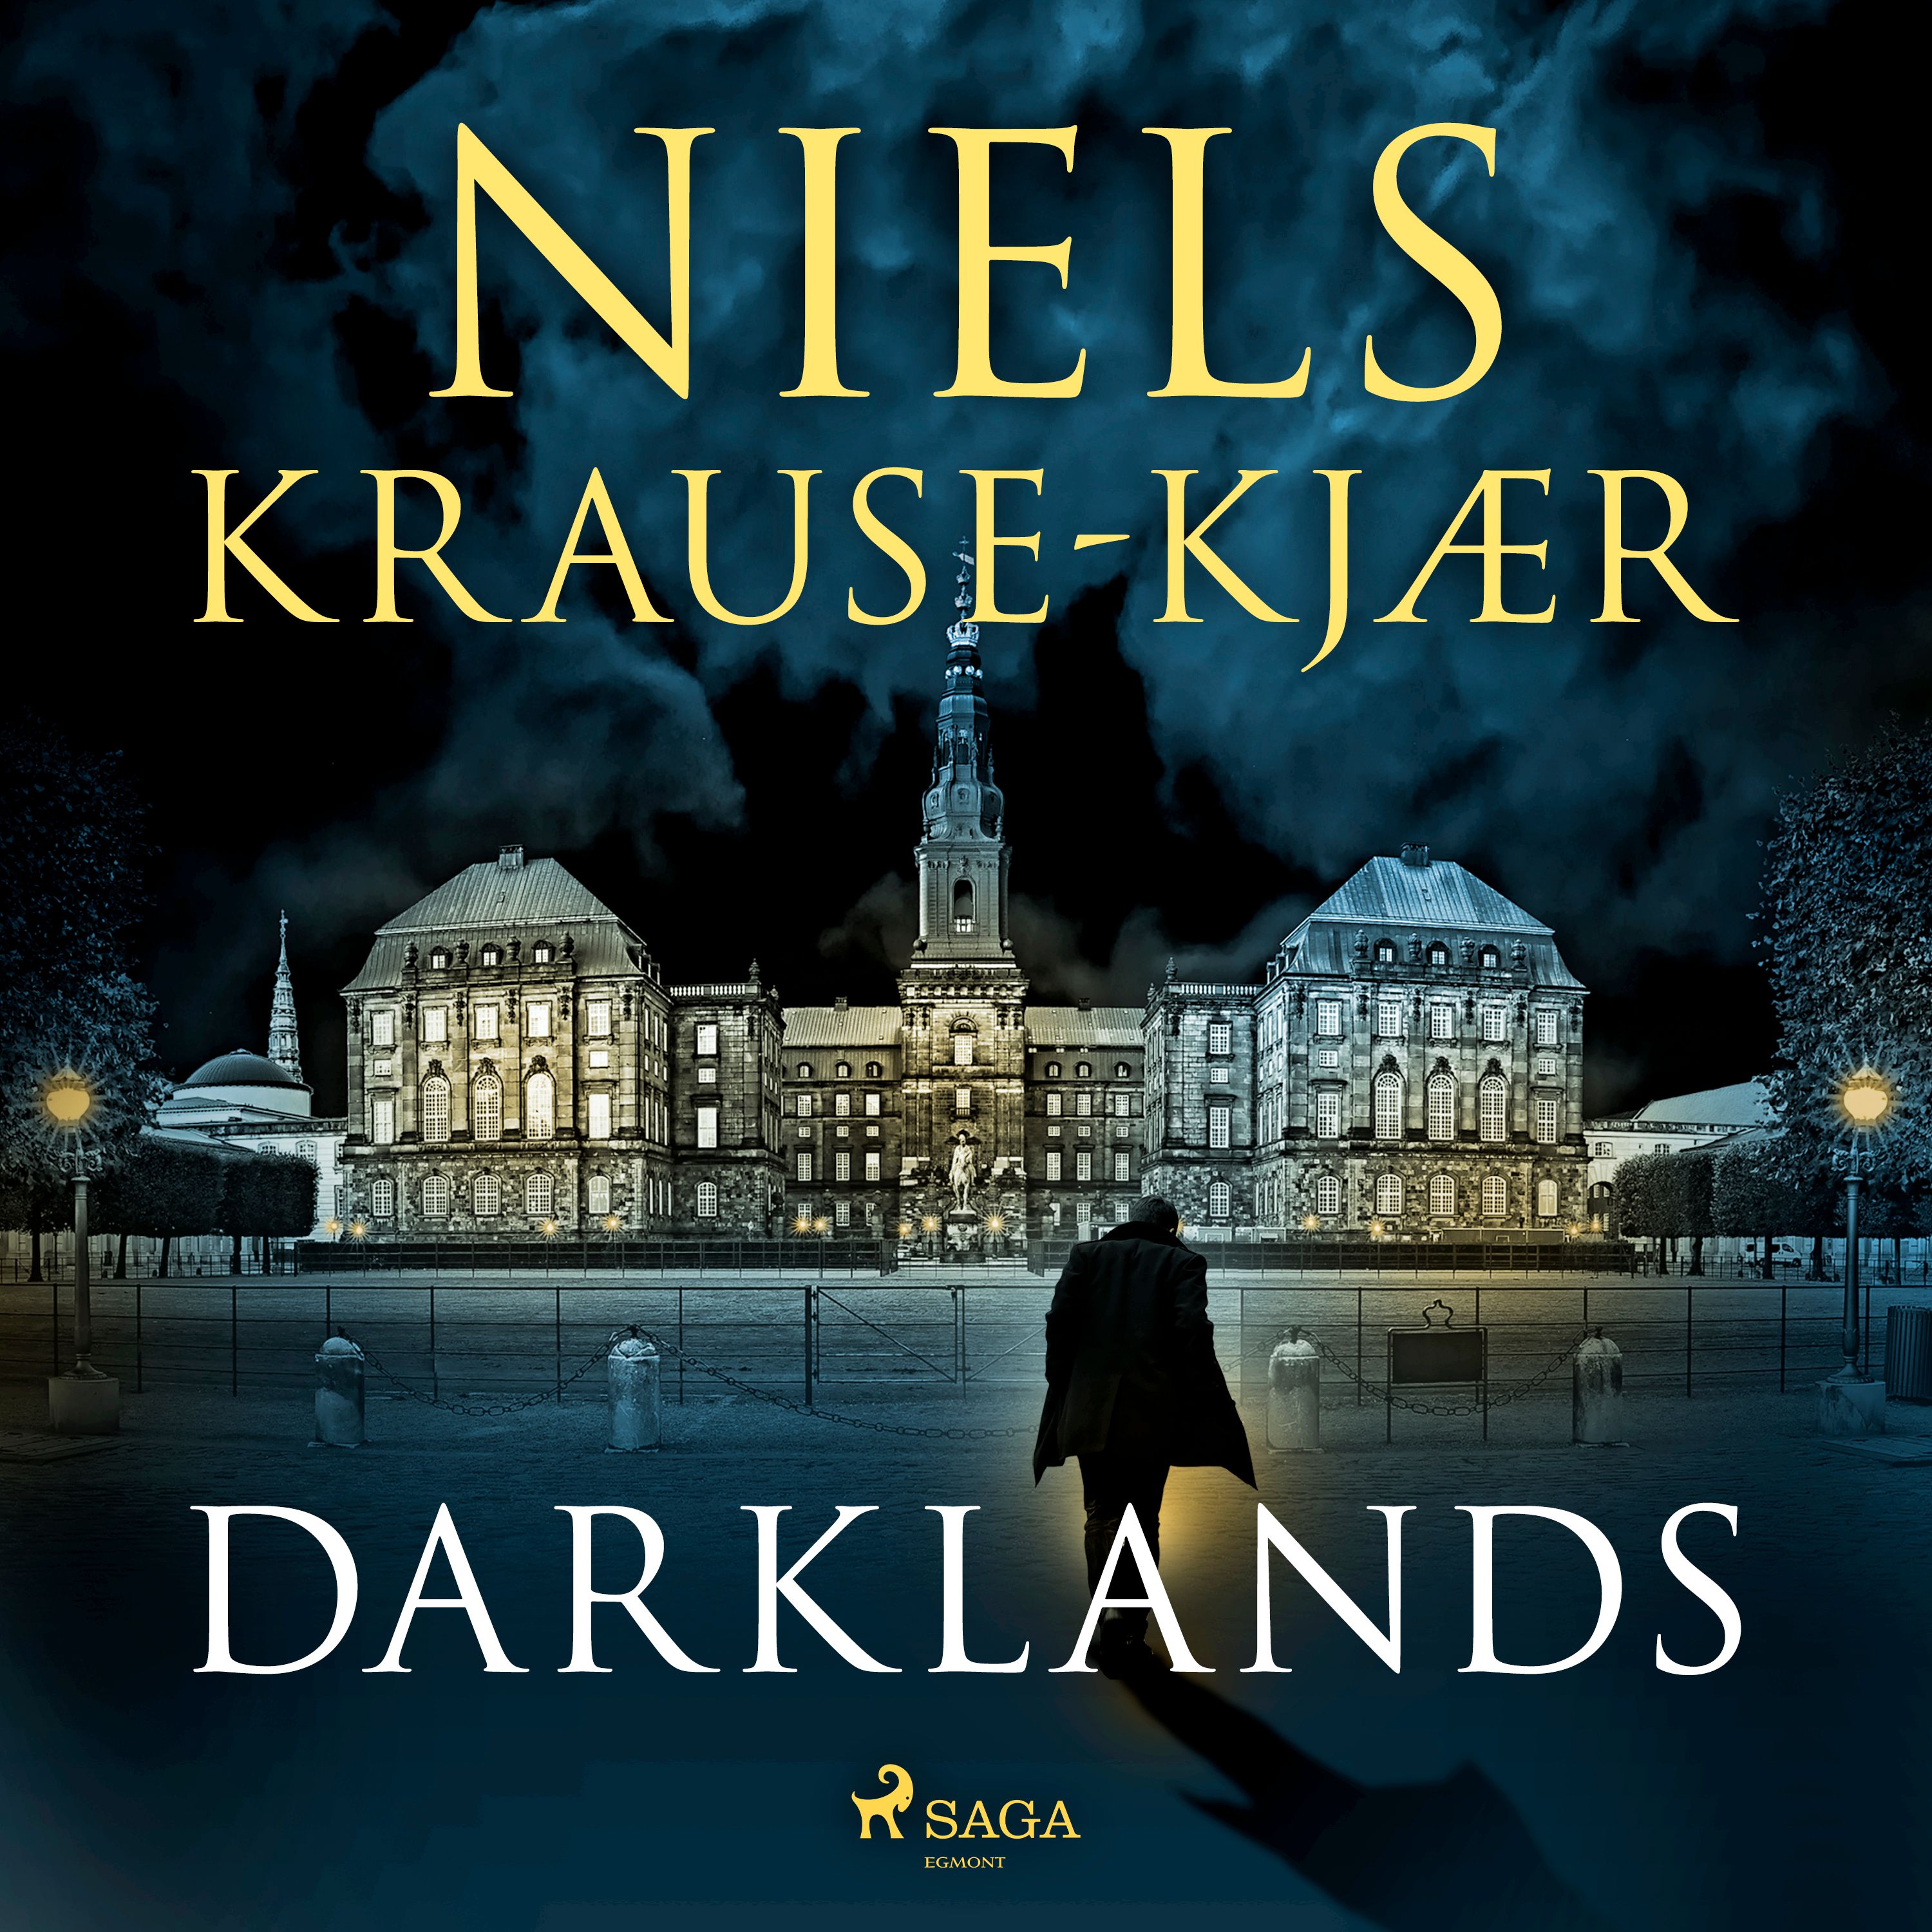 Darklands, ljudbok av Niels Krause-Kjær